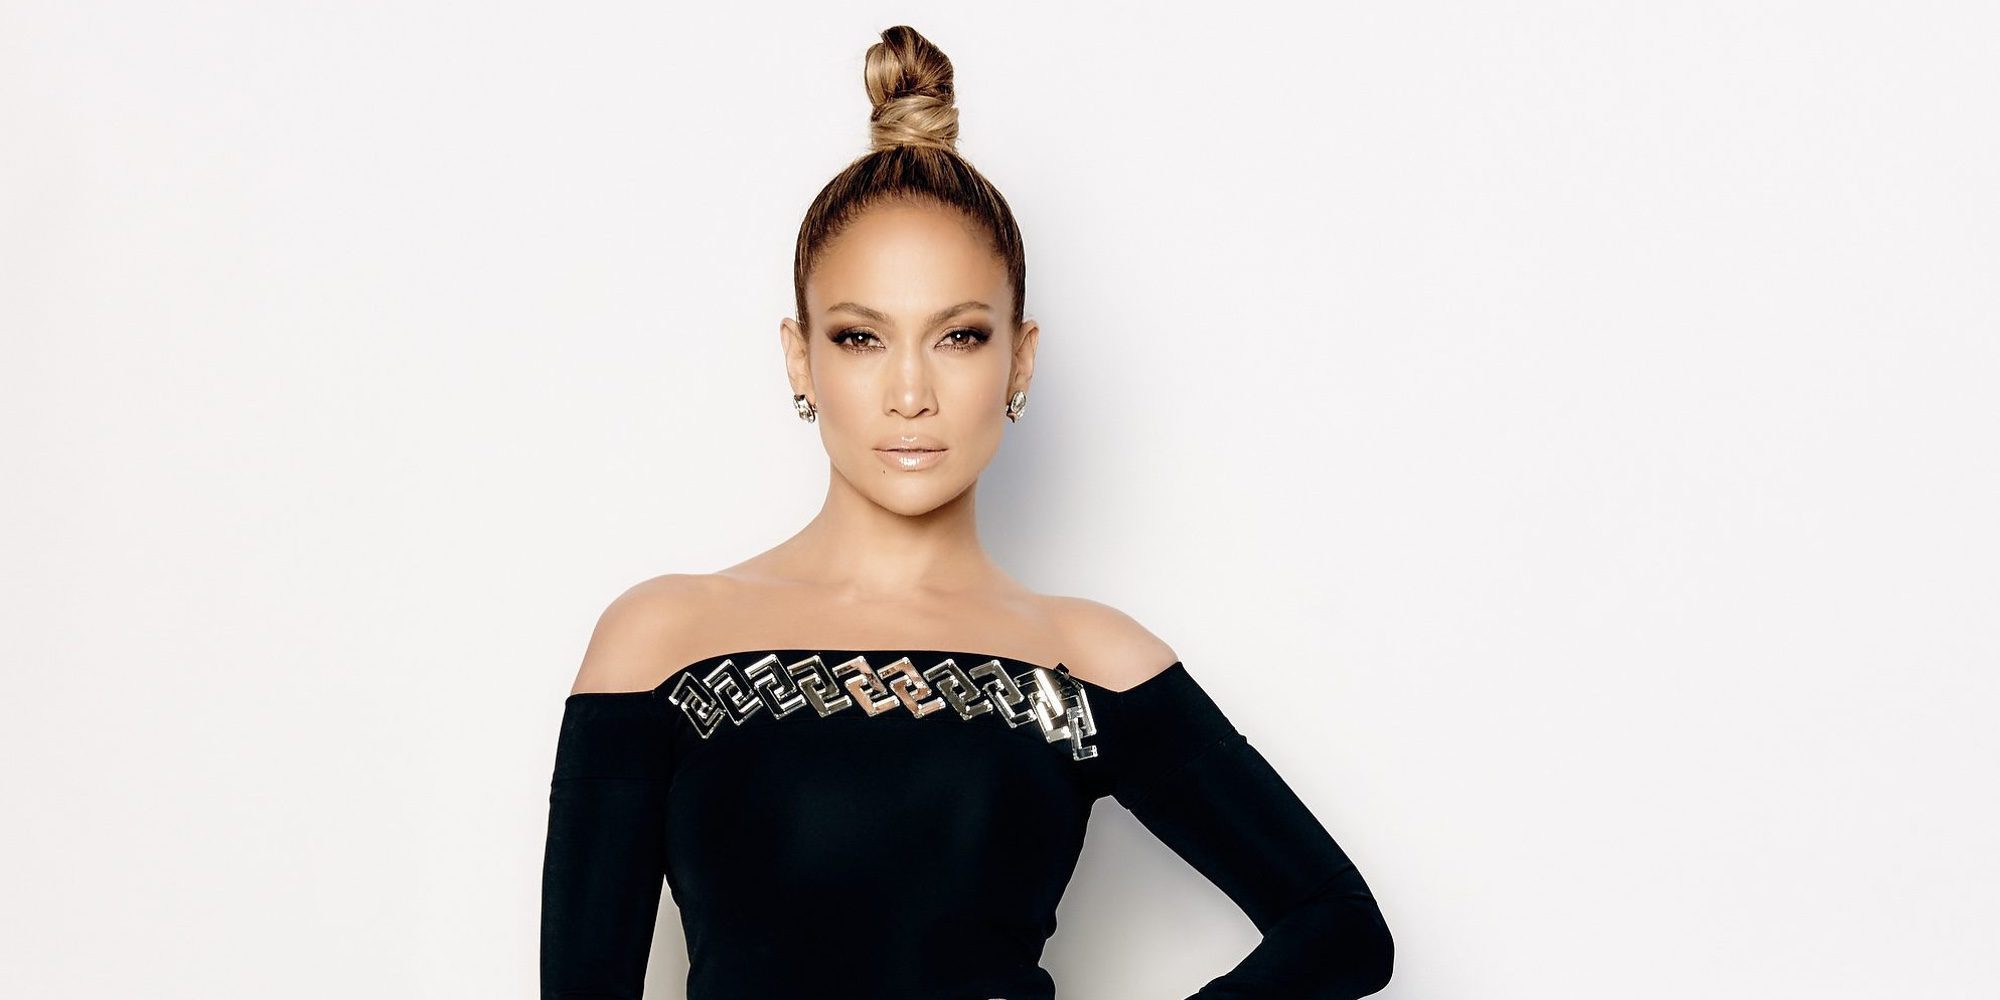 Jennifer Lopez consigue una orden de alejamiento contra un presunto acosador